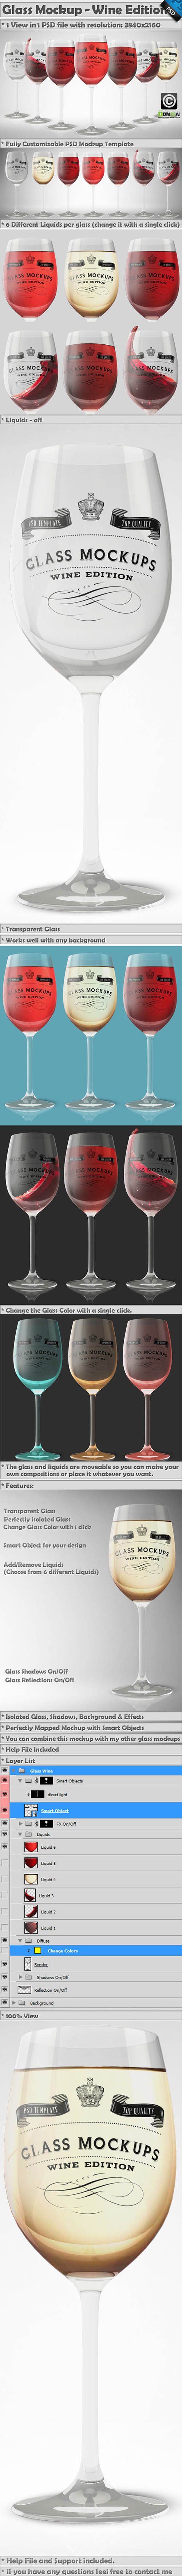 CM Glass Mockup - Wine Glass Mockup 9 - 369321